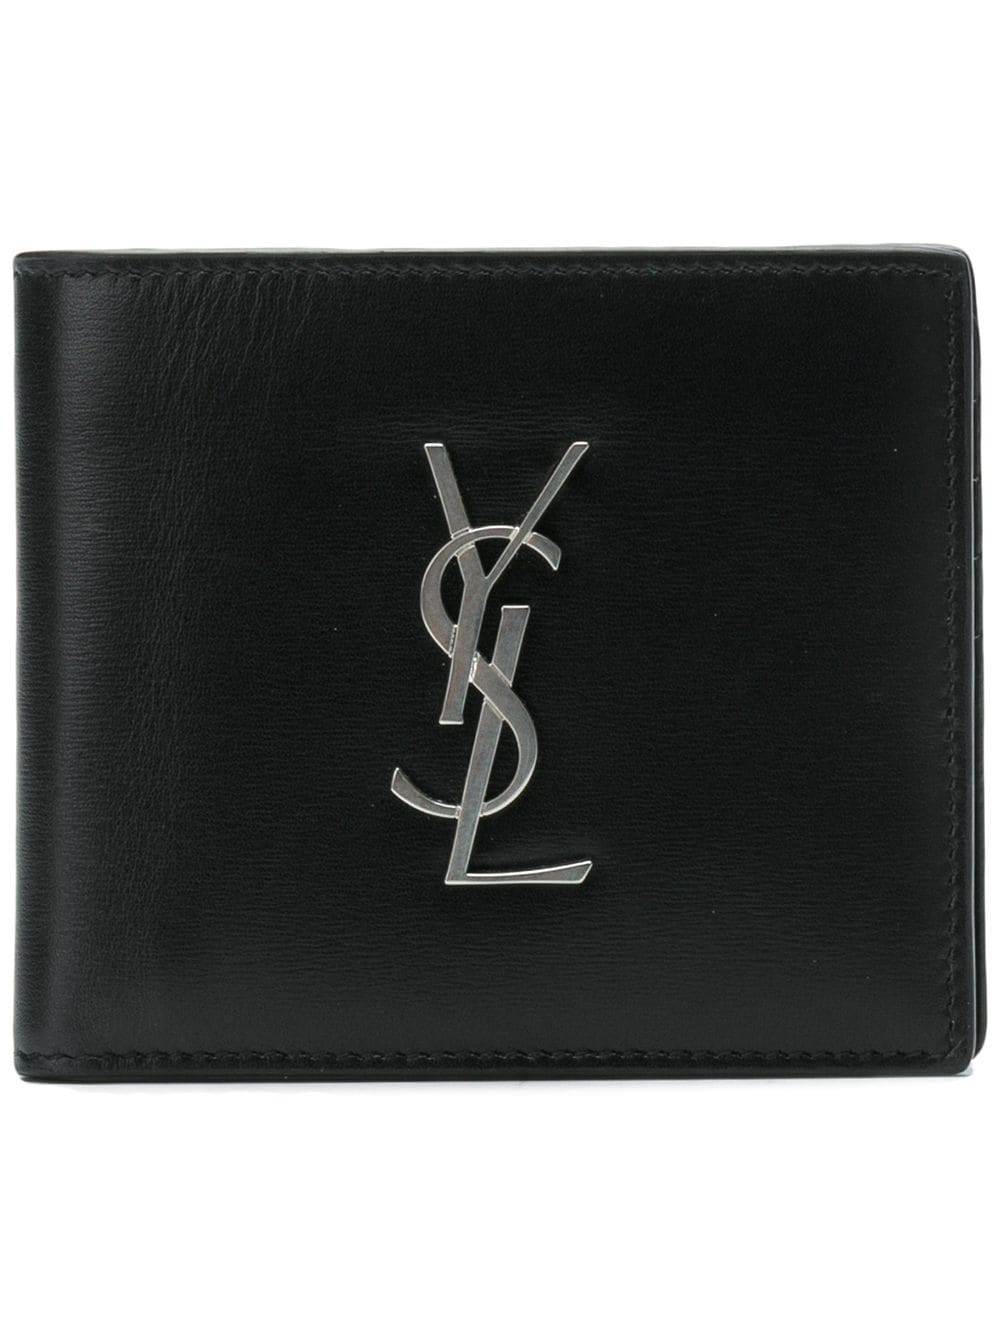 SAINT LAURENT Classic Black Leather Monogram Wallet for Fashionable Women